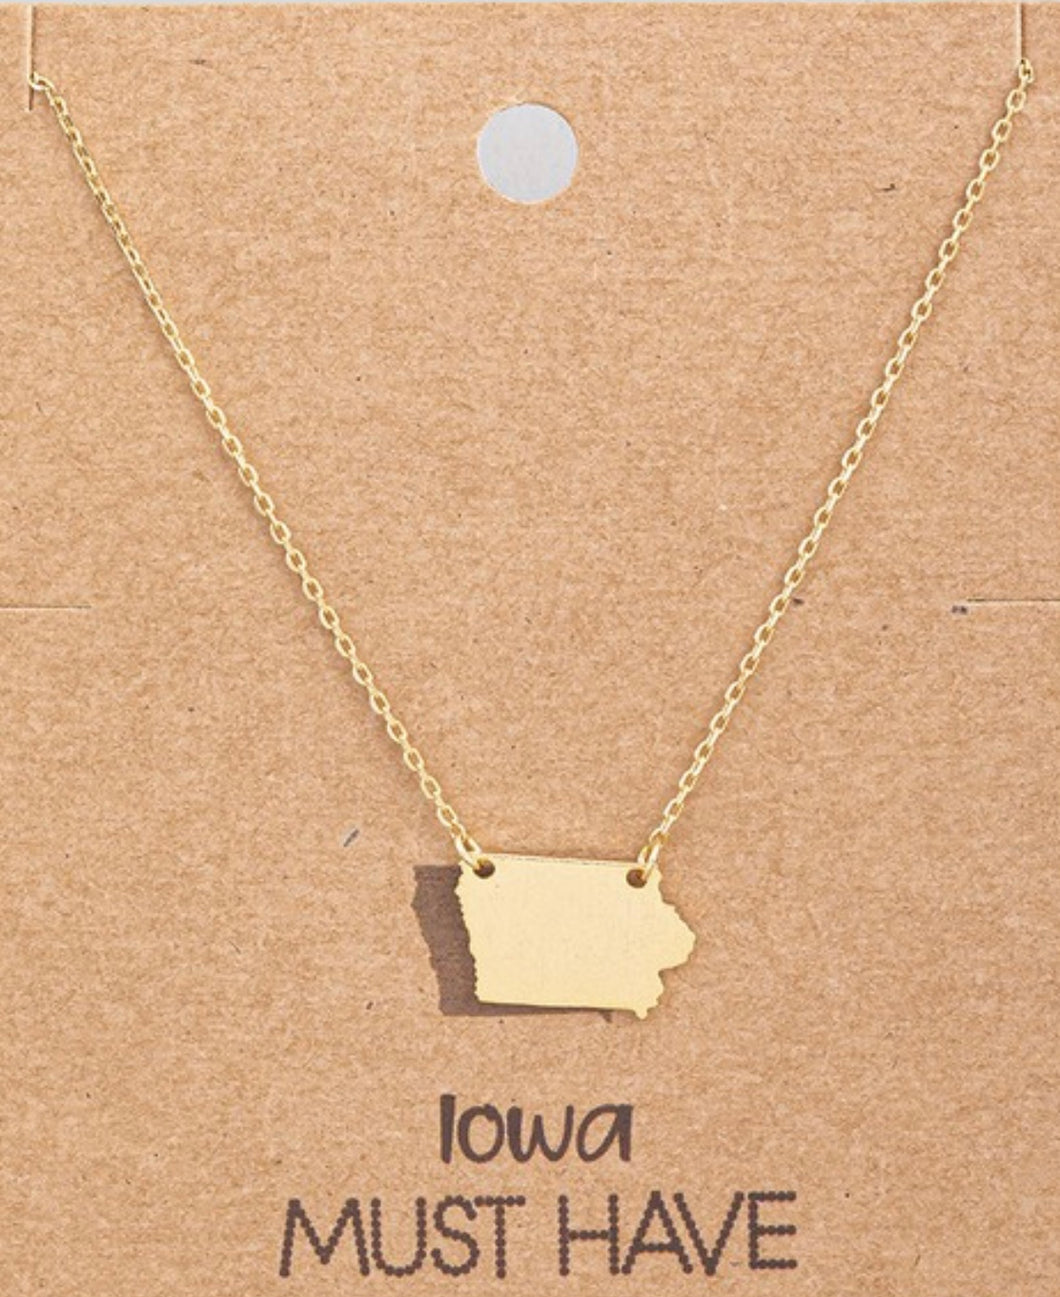 Iowa Necklace